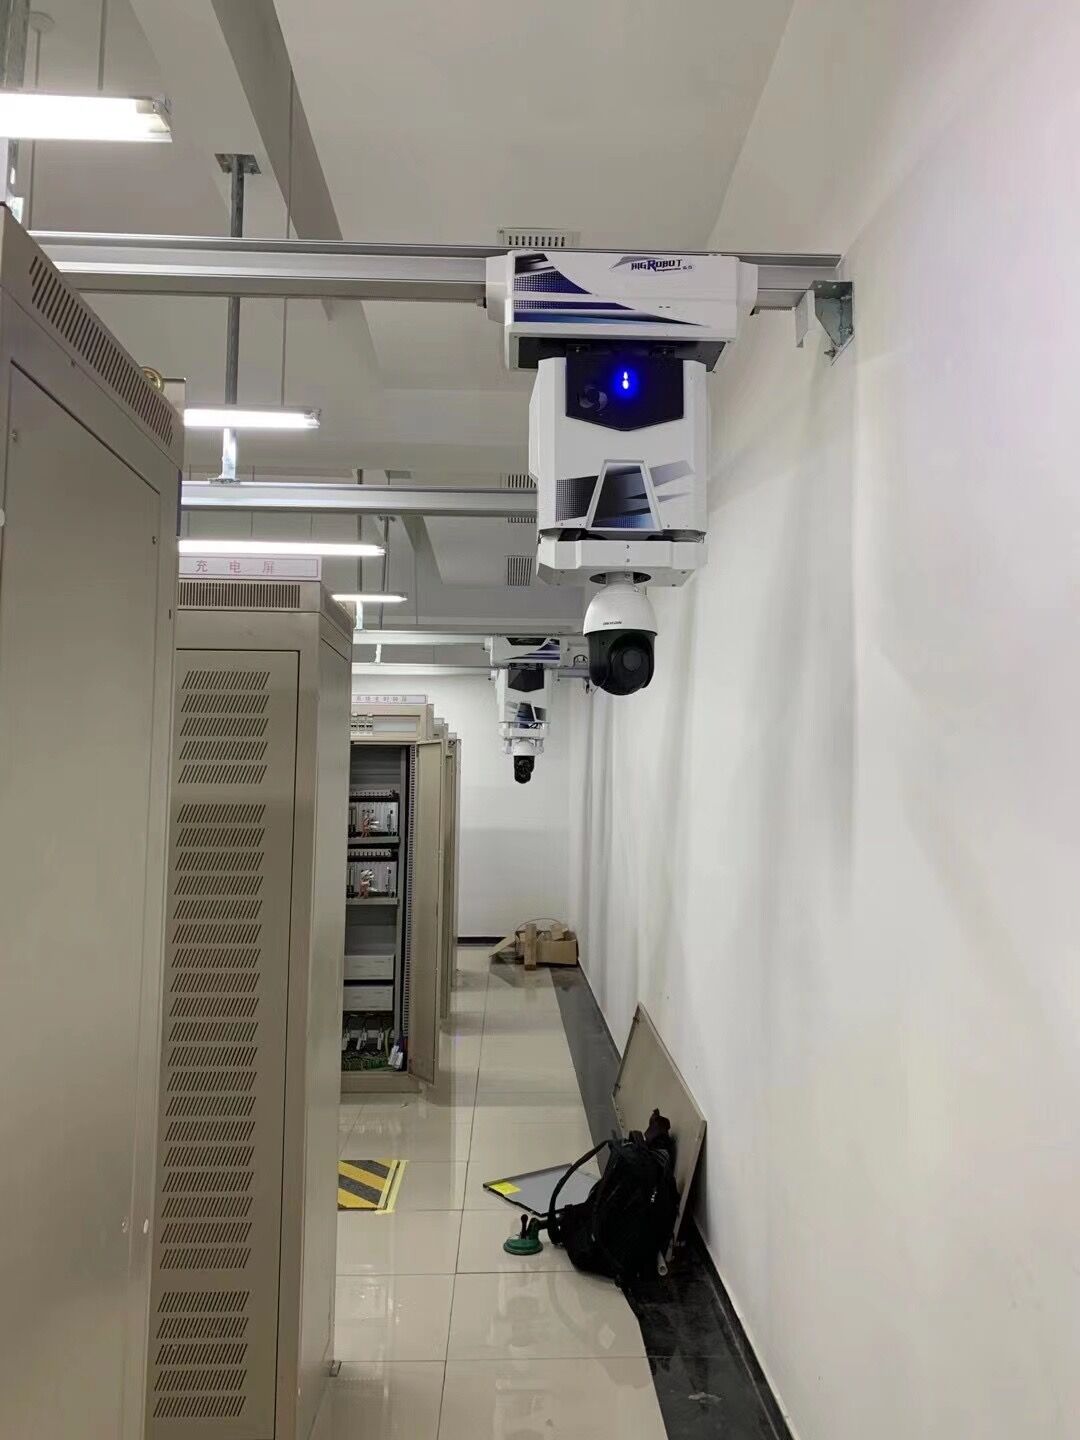 地下综合管廊 轨道巡检机器人 机房设备巡检 智能巡检巡更系统 环形轨道转弯机器人 S型轨道监控机器人 智能巡检2